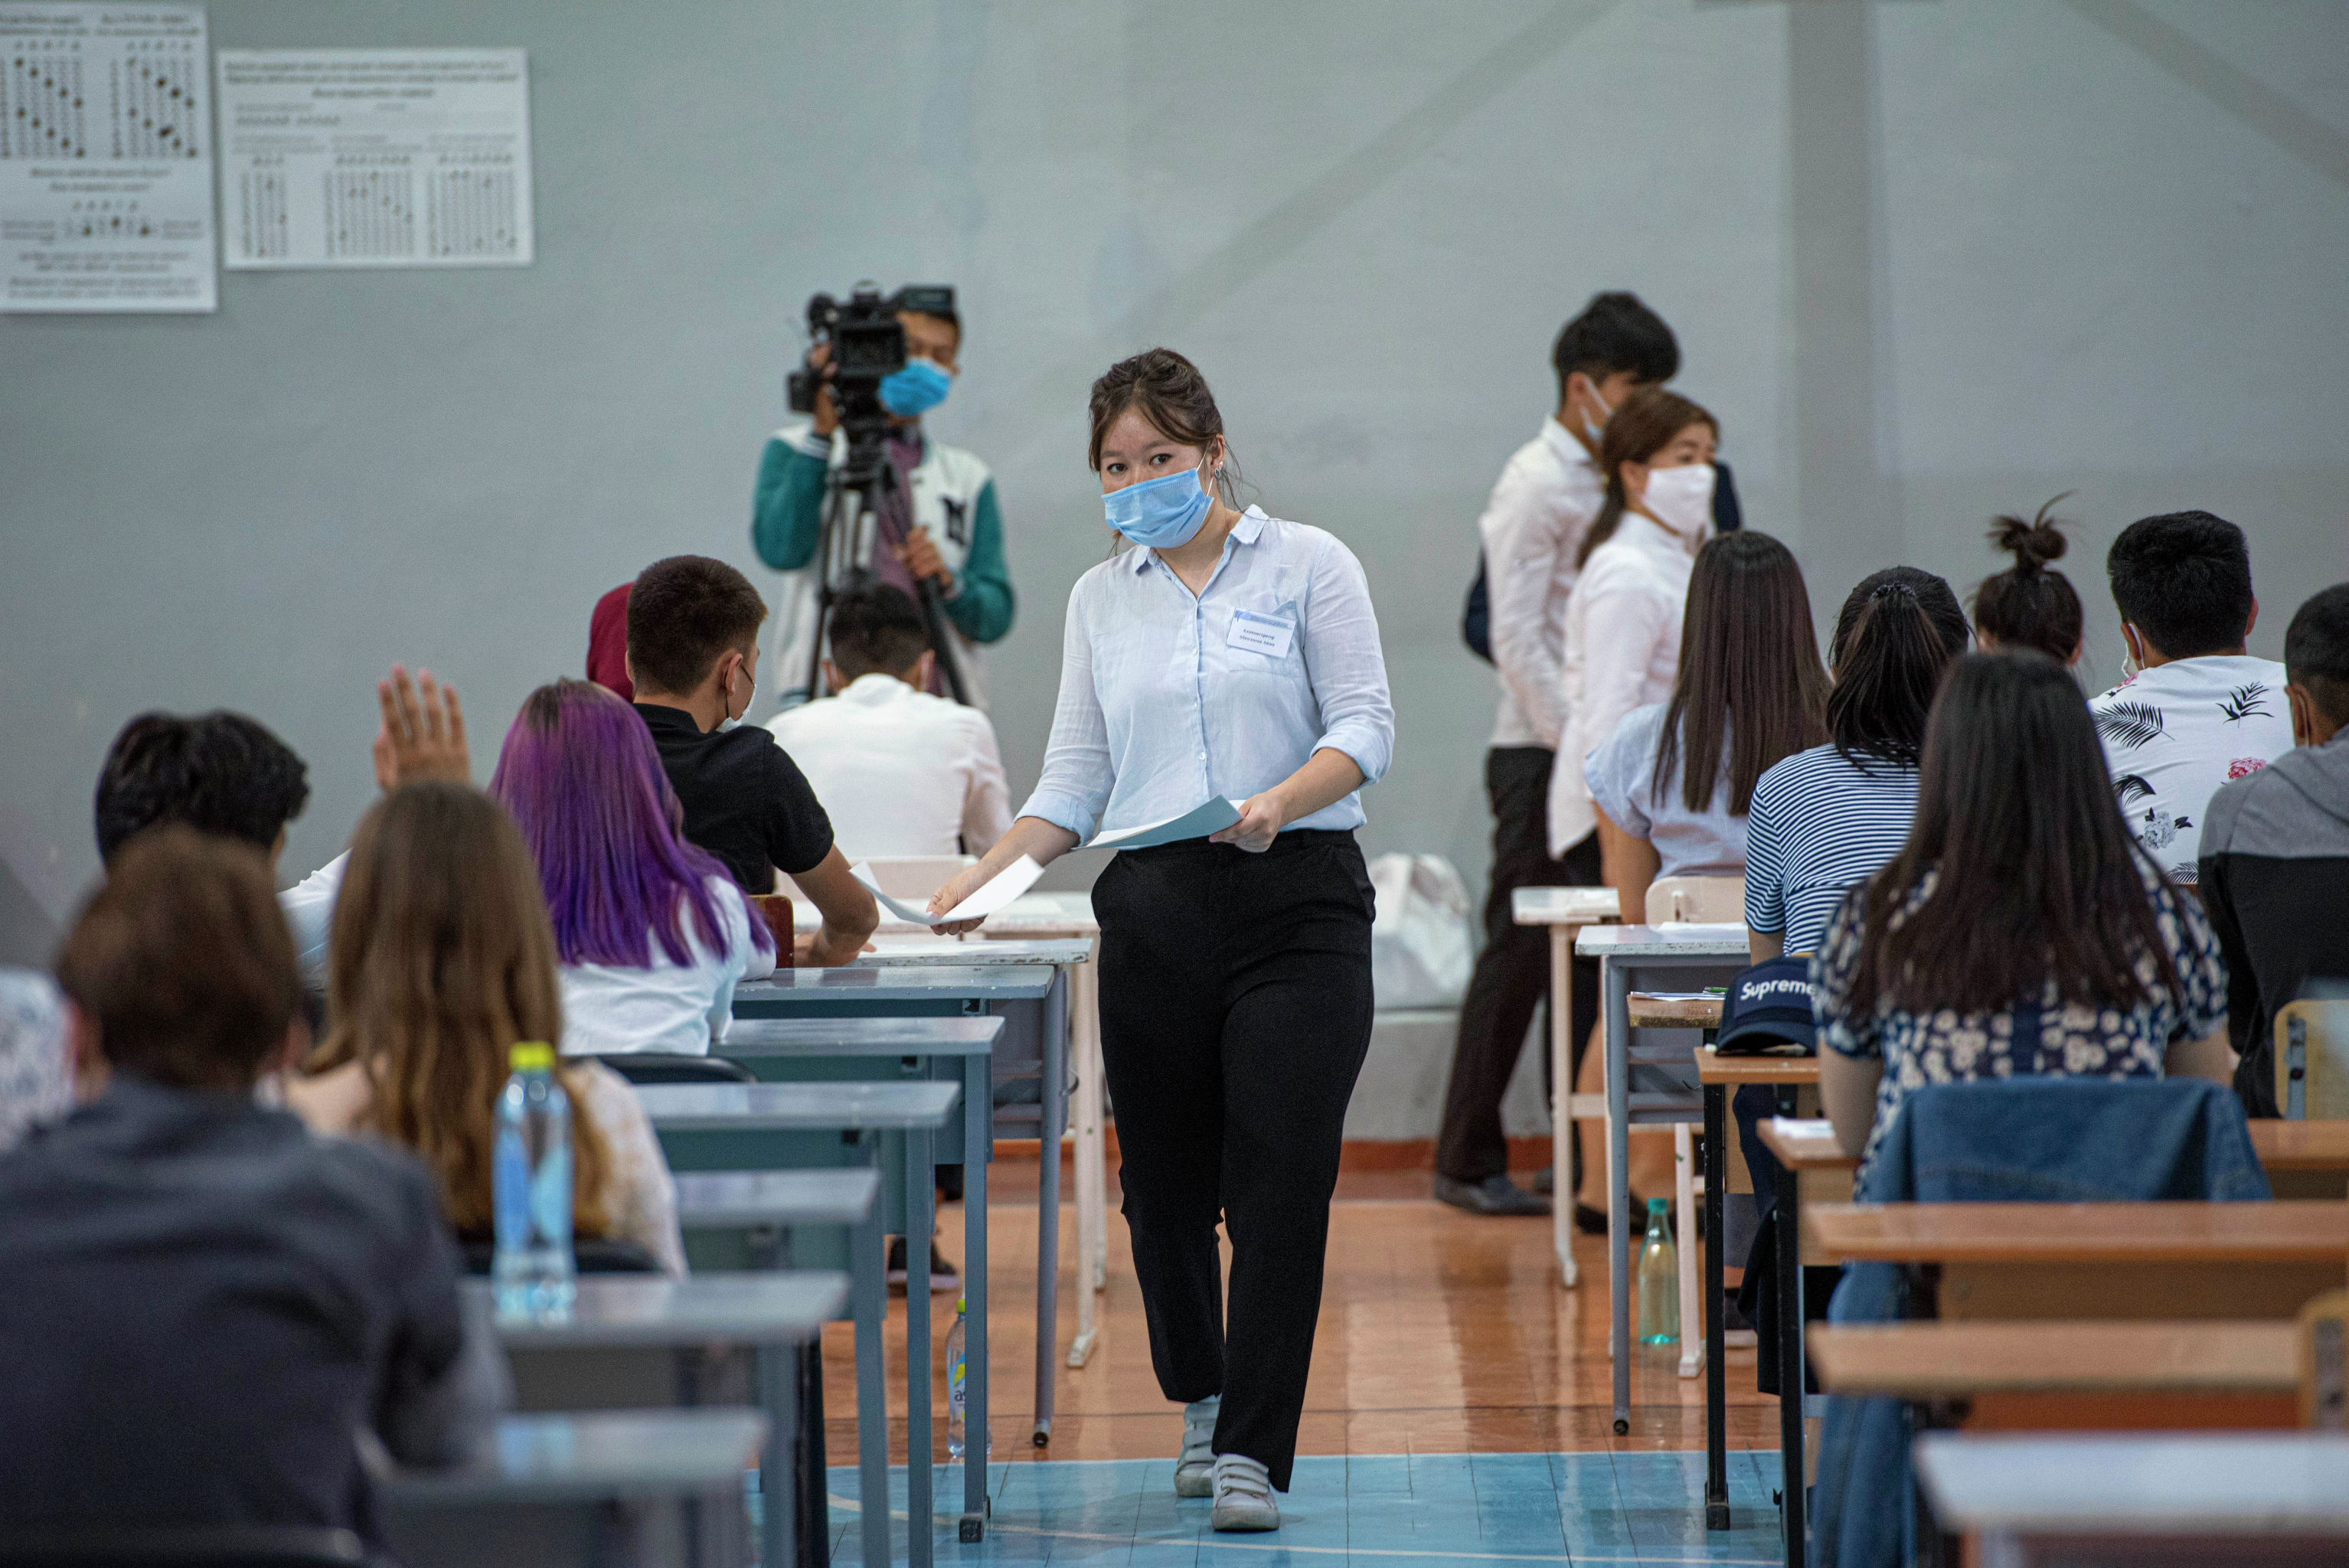 Раздача экзаменационного материала перед началом общереспубликанского тестирования в Бишкеке в условиях пандемии COVID-19